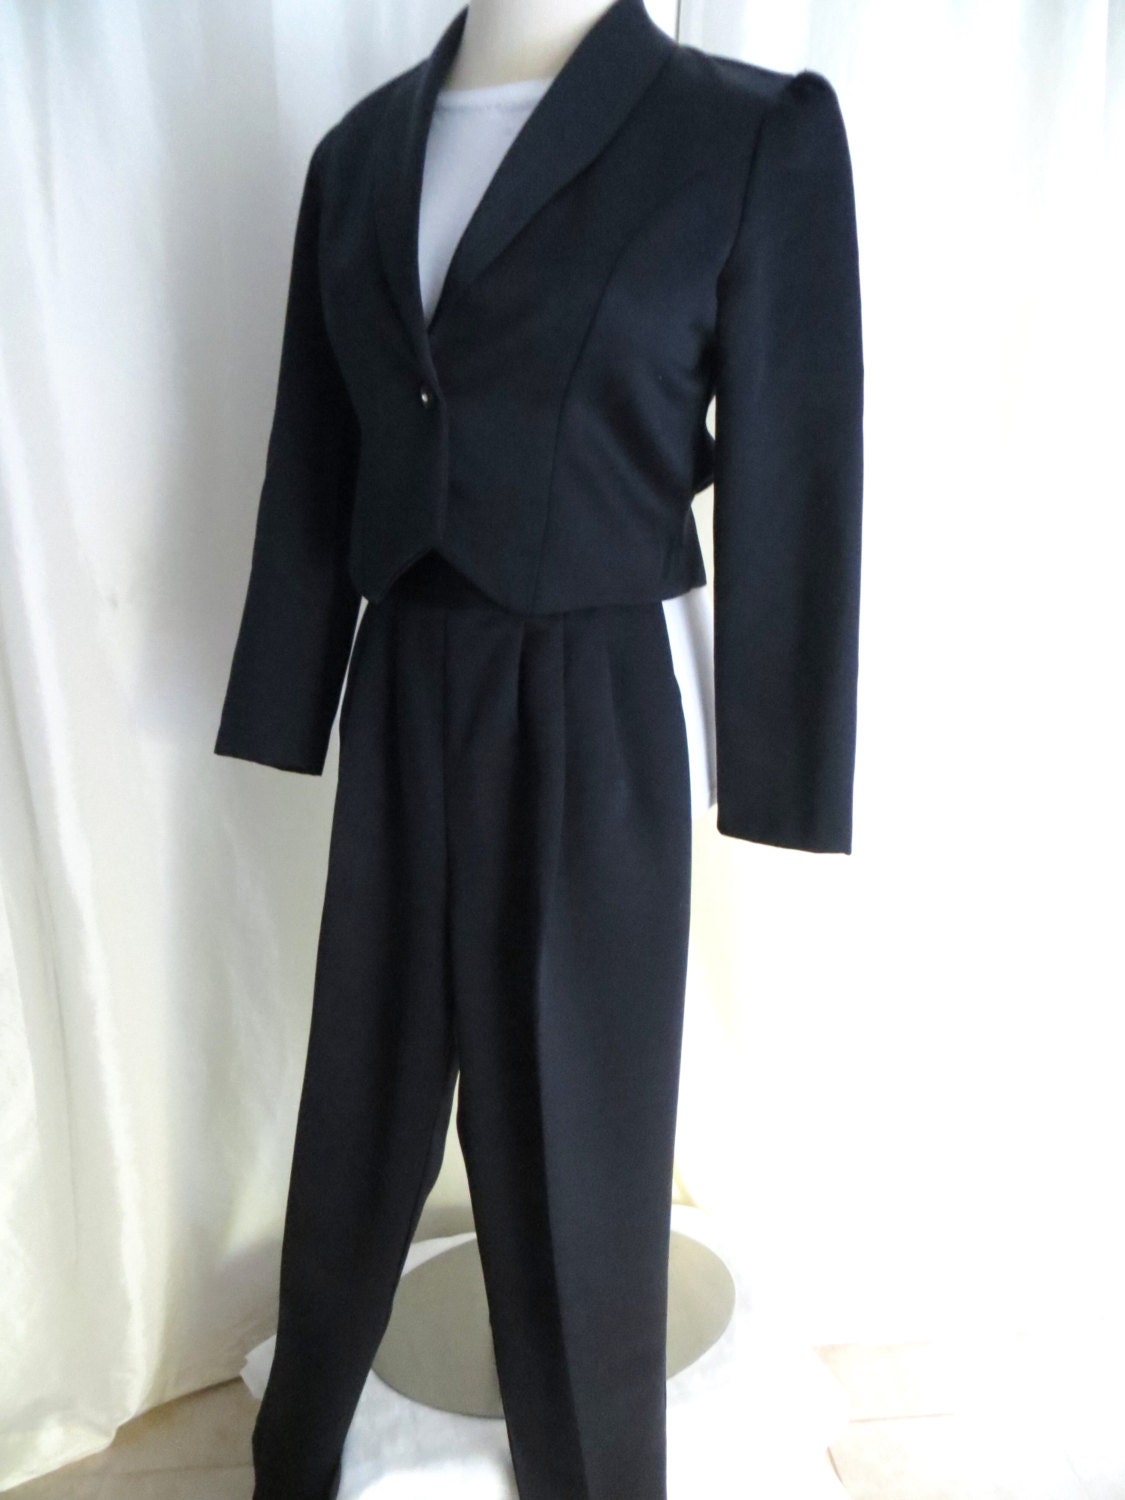 Vintage 80s womens tuxedo suit pants suit formal black union